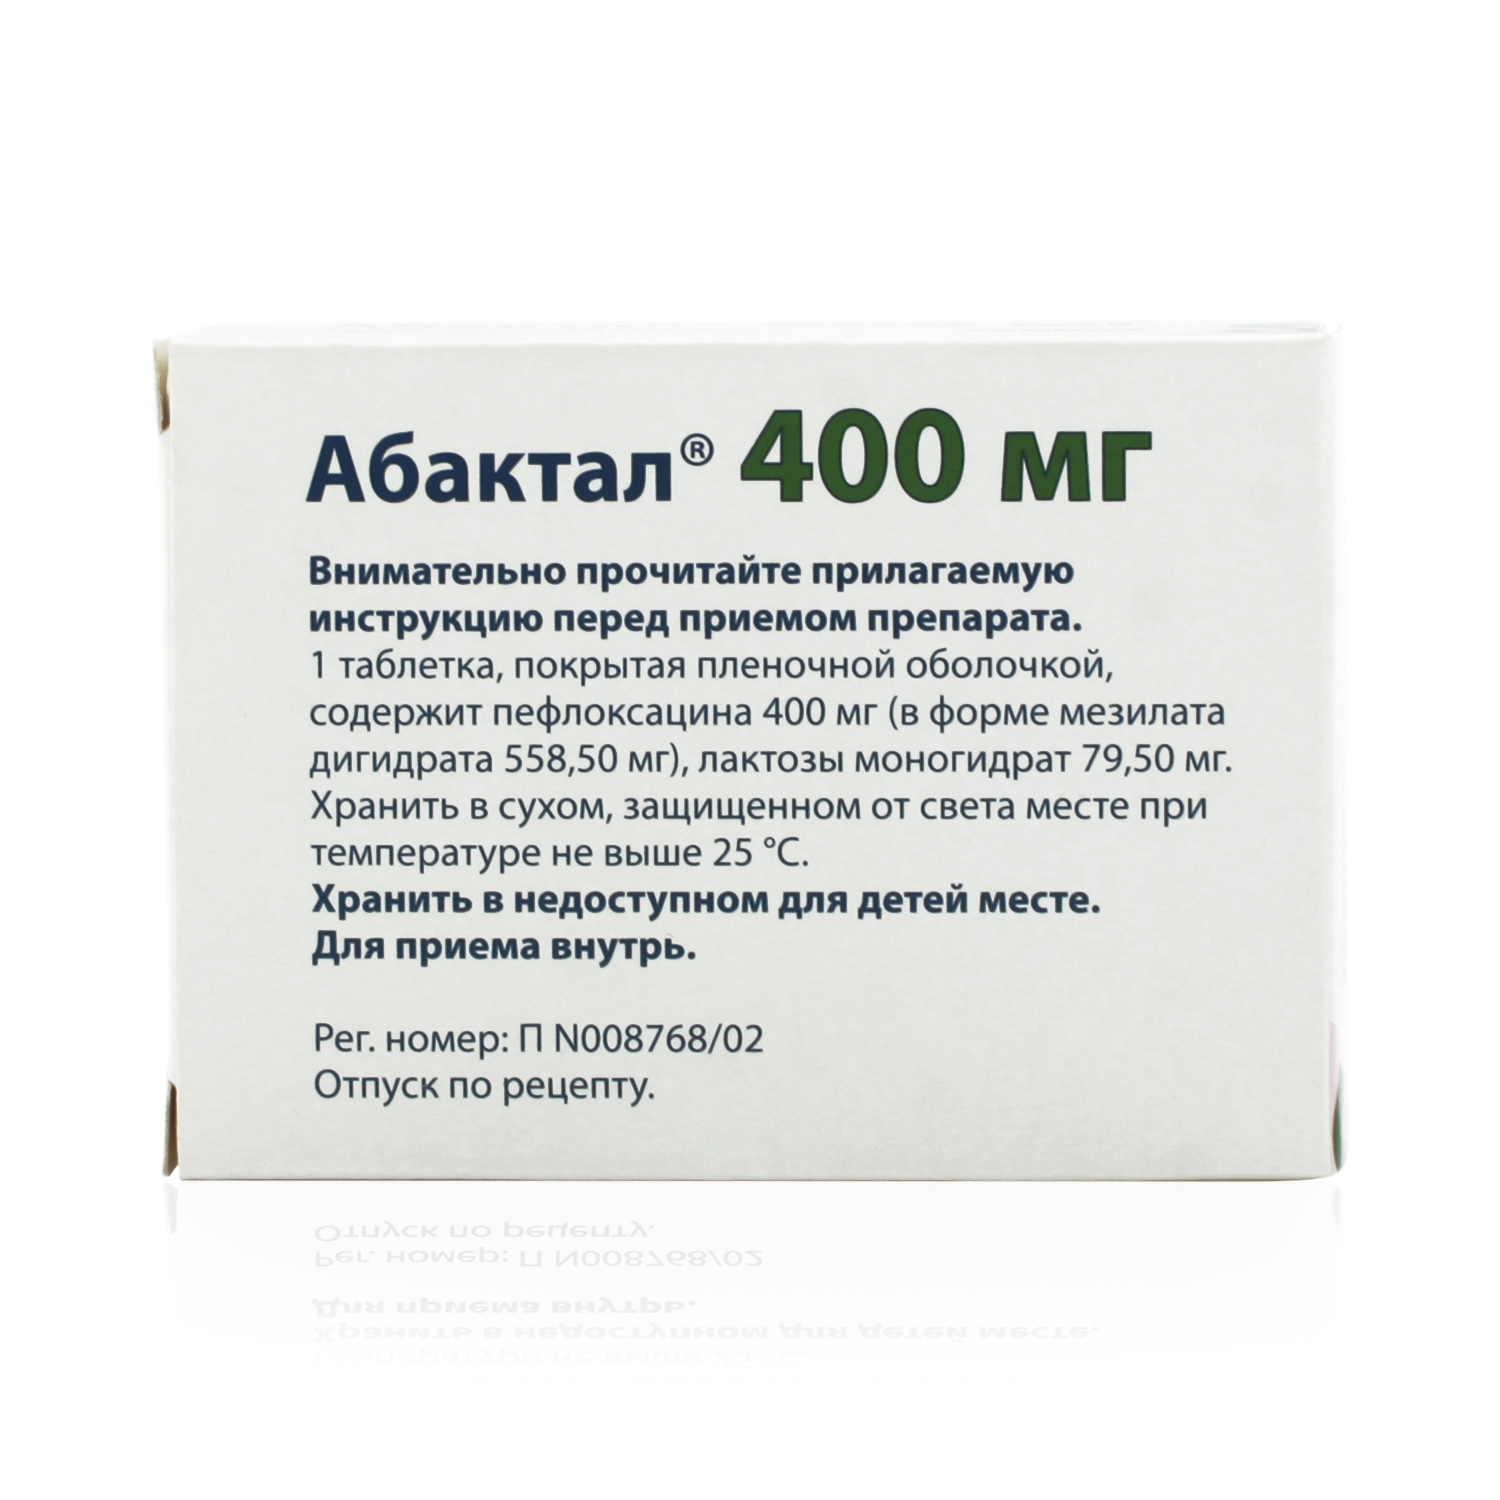 Абактал Таблетки покрытые пленочной оболочкой 400 мг 10 шт  по .